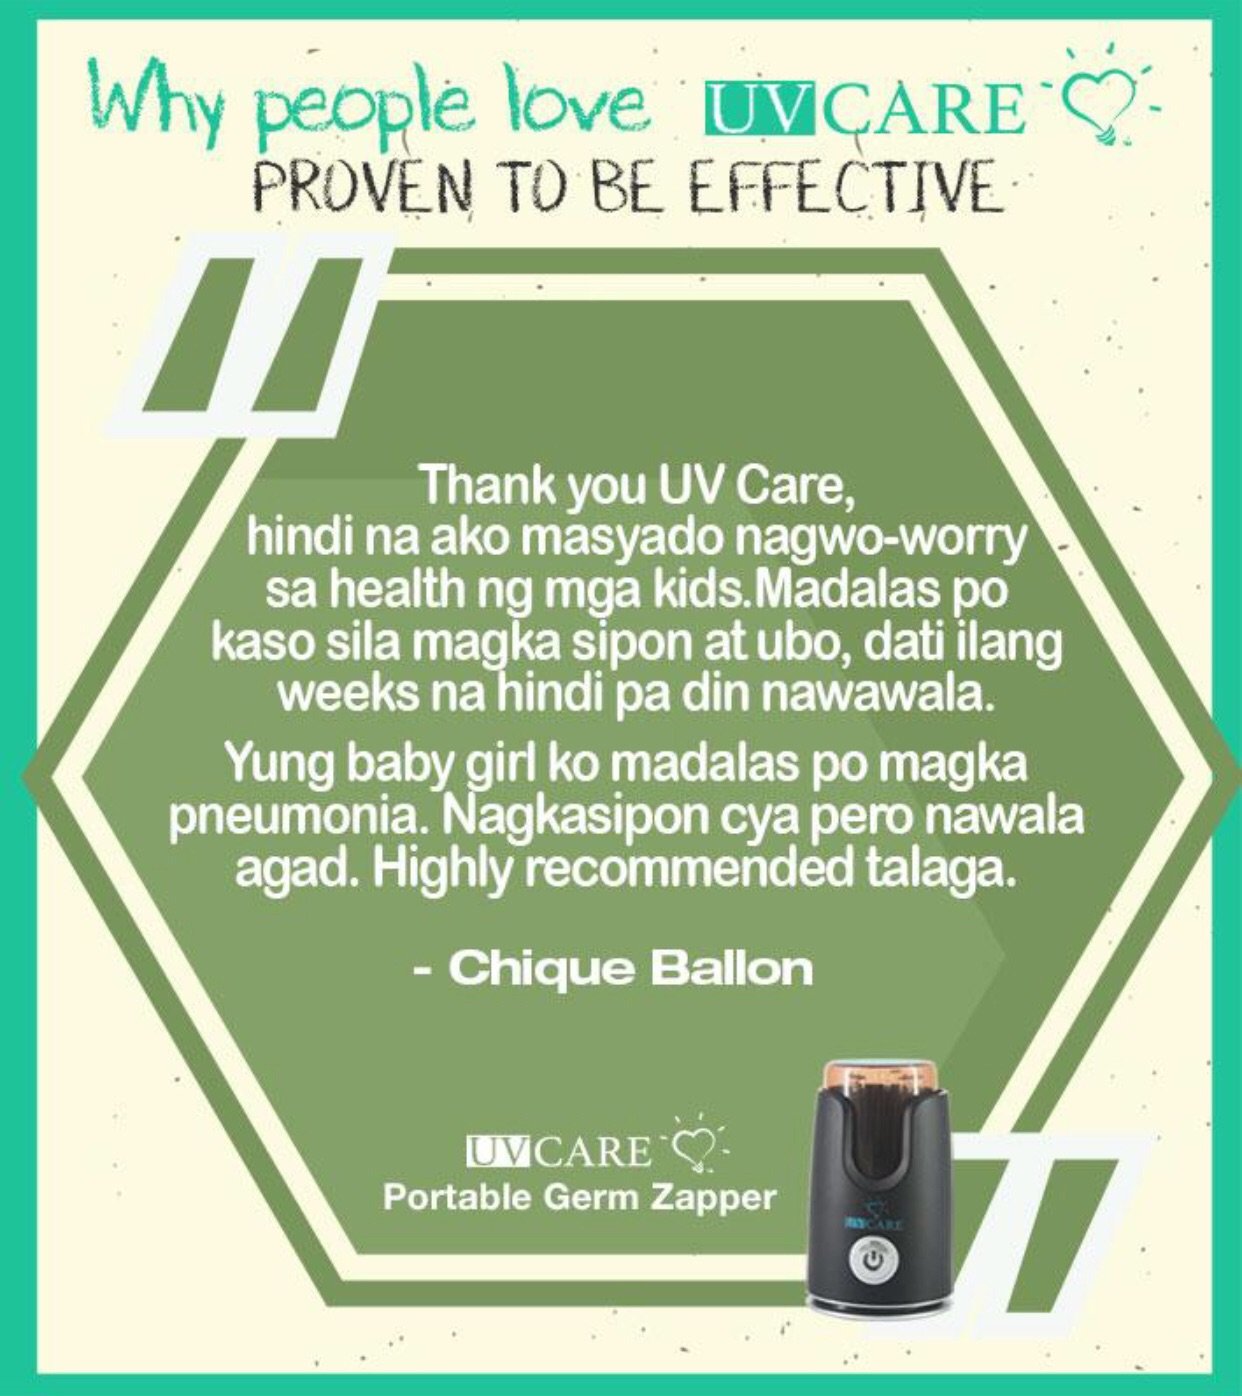 UV Care Portable Germ Zapper